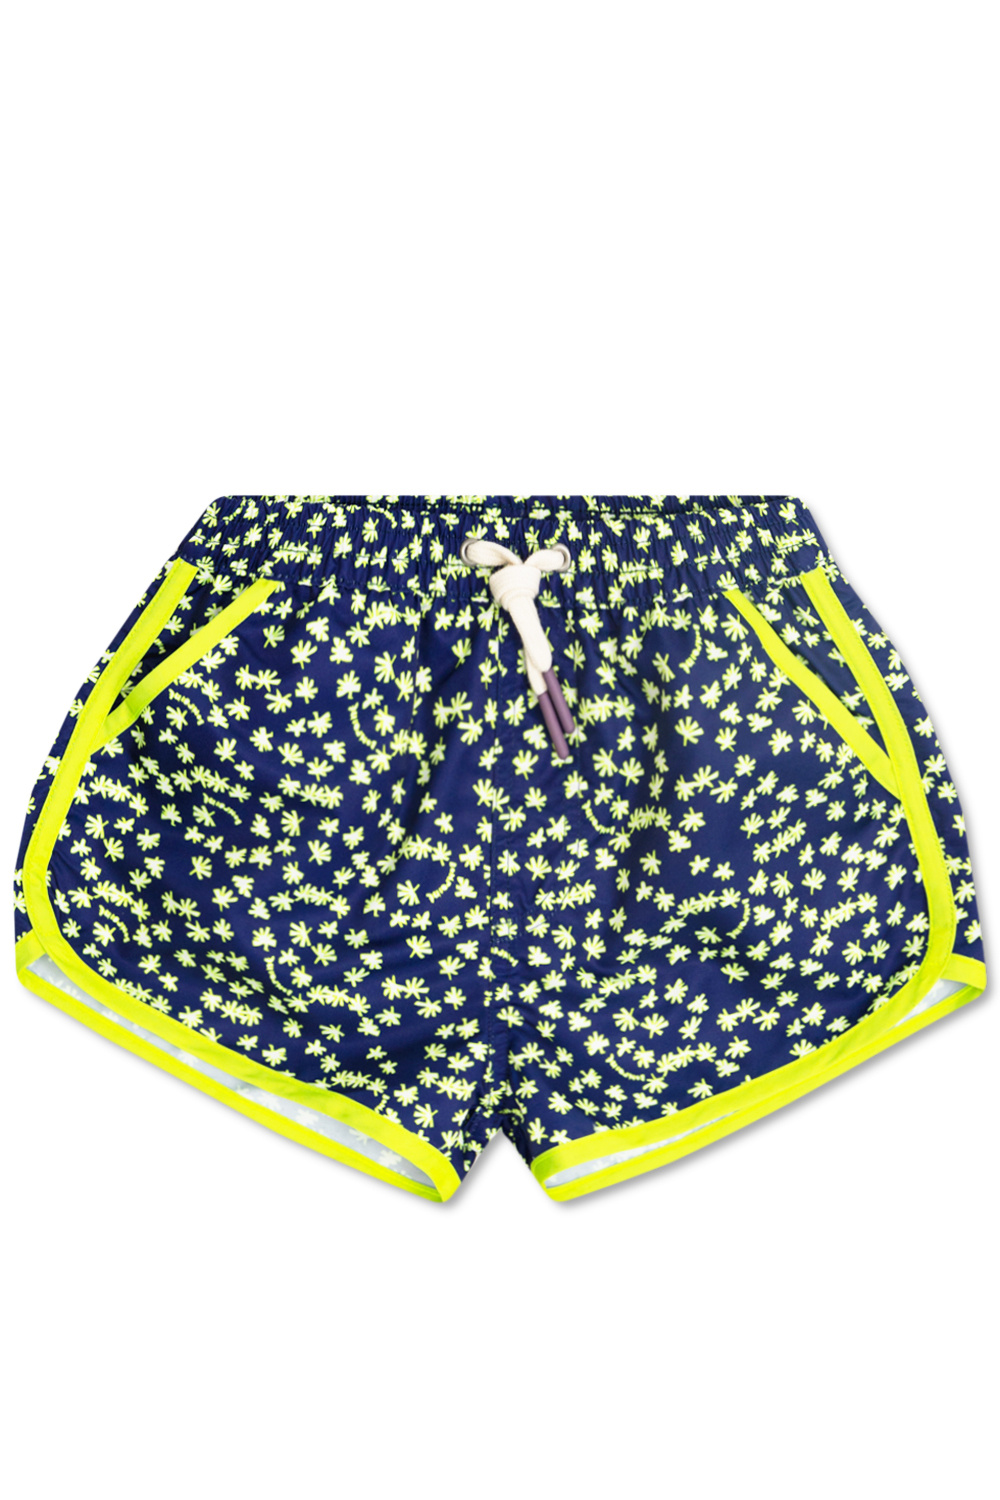 Bonpoint  Patterned swim Clima shorts